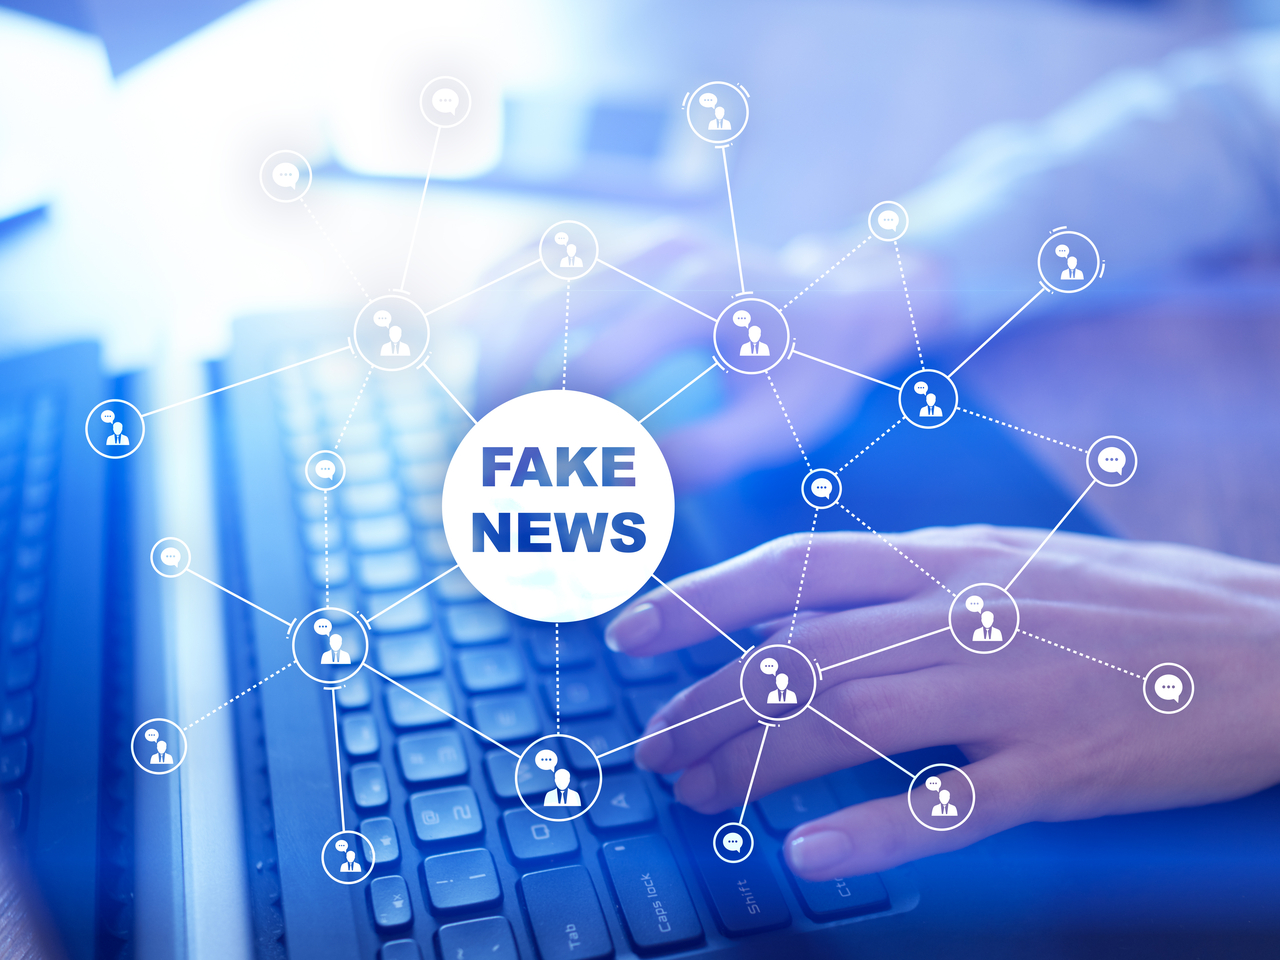 Facebook sanzionerà chi diffonde troppe fake news. Che brutta idea